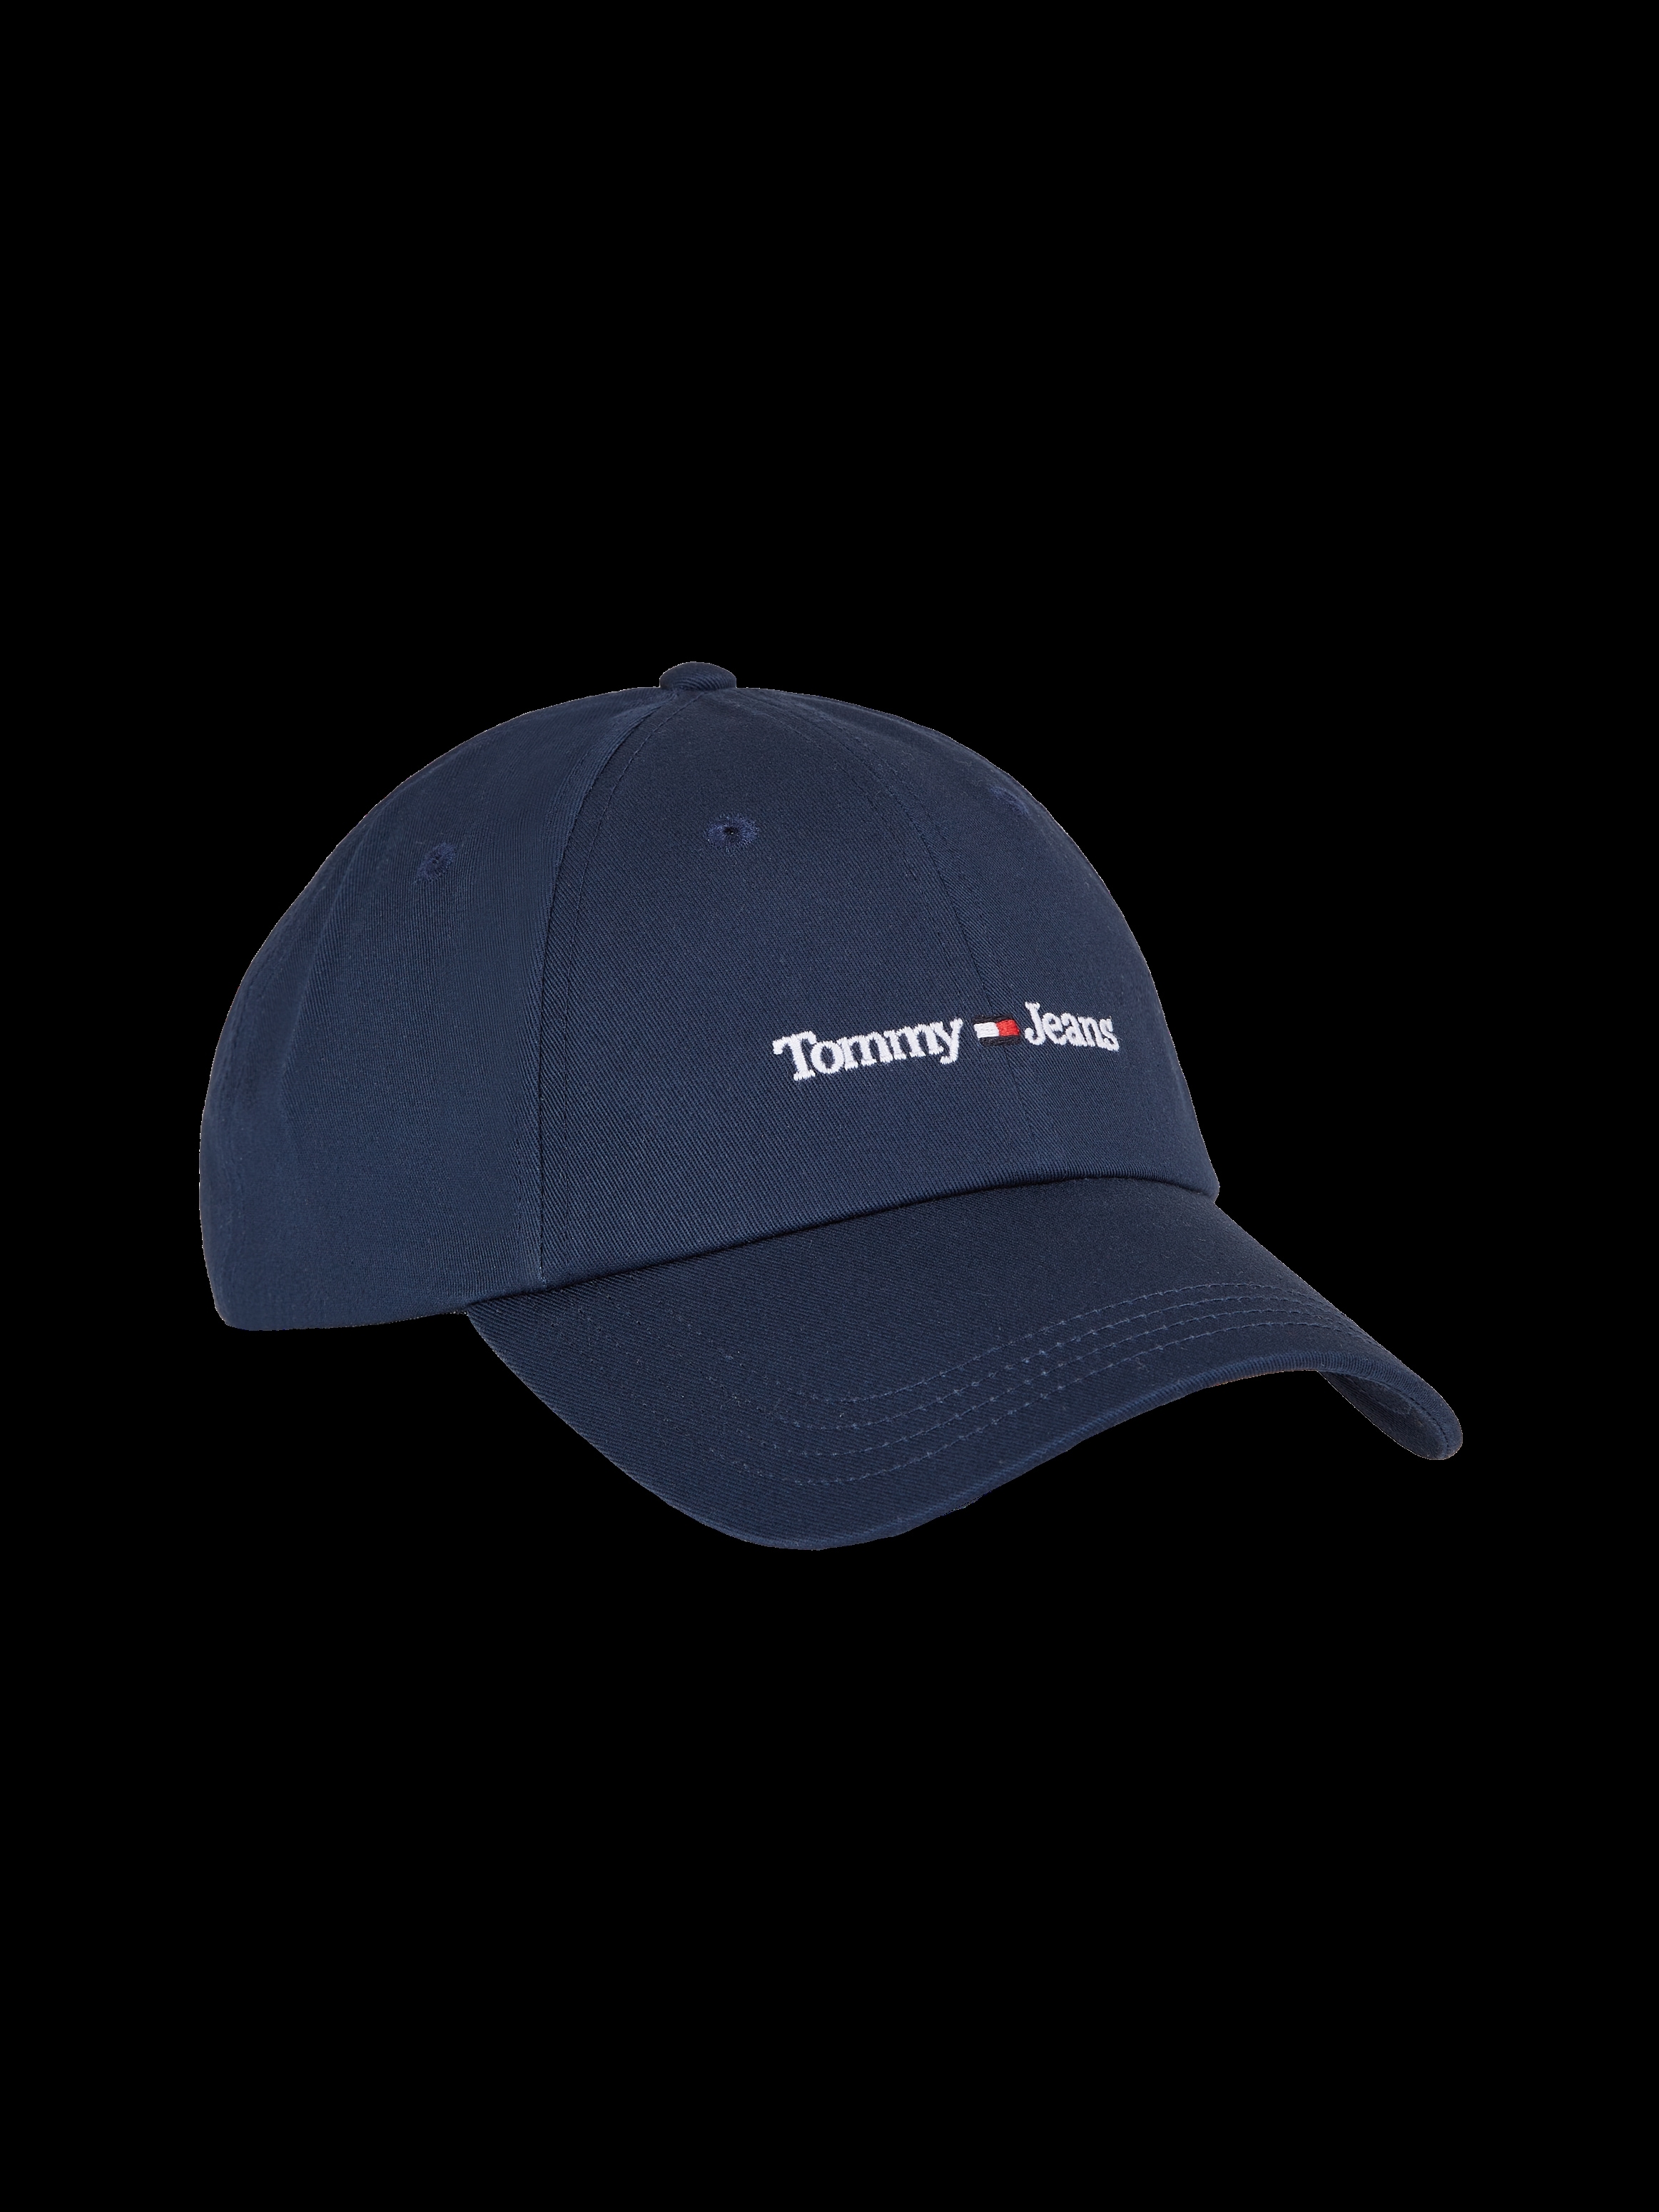 Tommy Jeans Baseball Cap, aus Bio-Baumwolle bei OTTO kaufen | OTTO